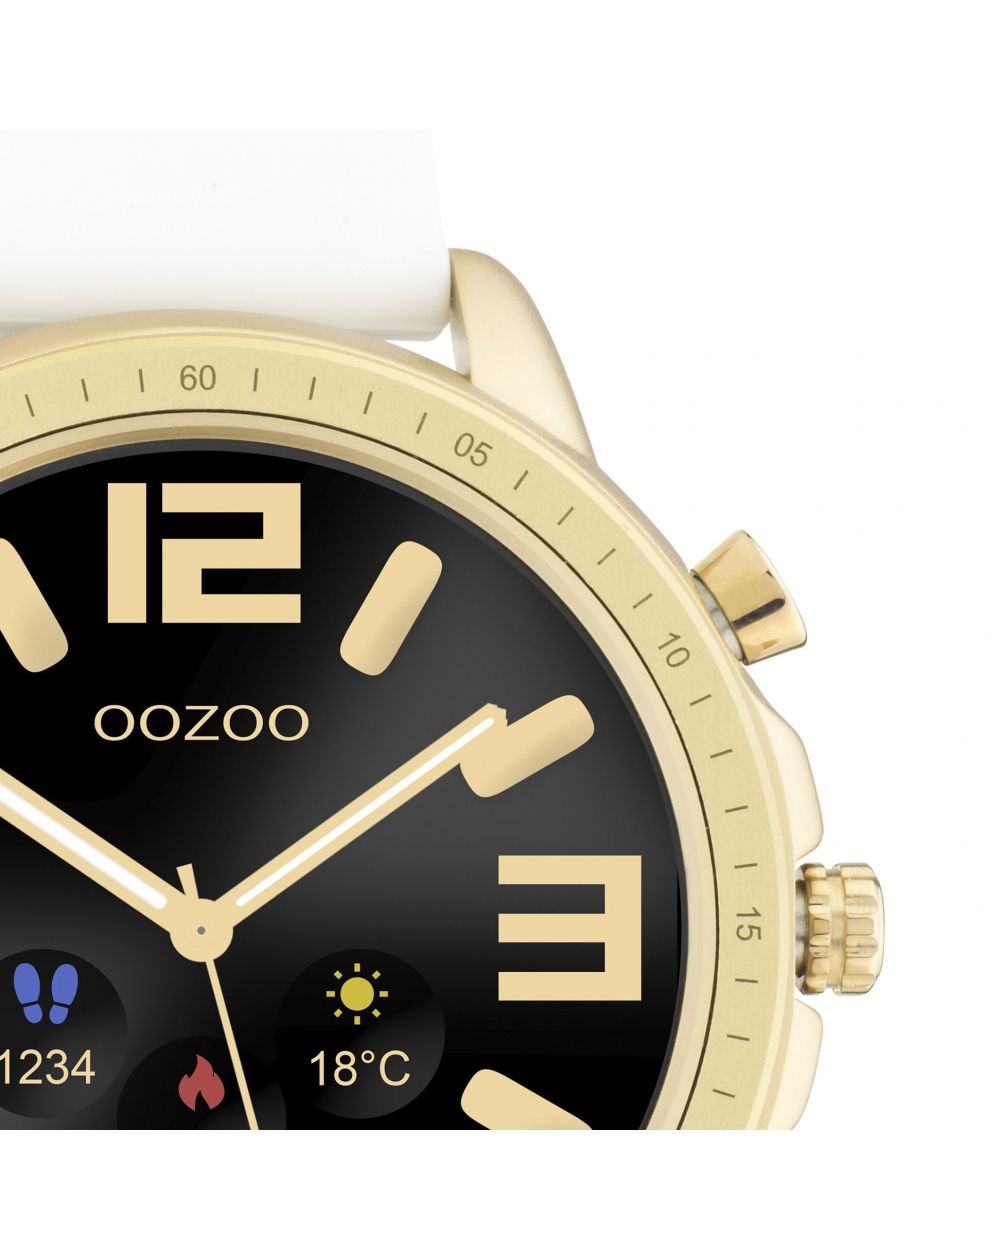 Montre Oozoo Q00316 - Smartwatch - Marque OOZOO - Livraison gratuite